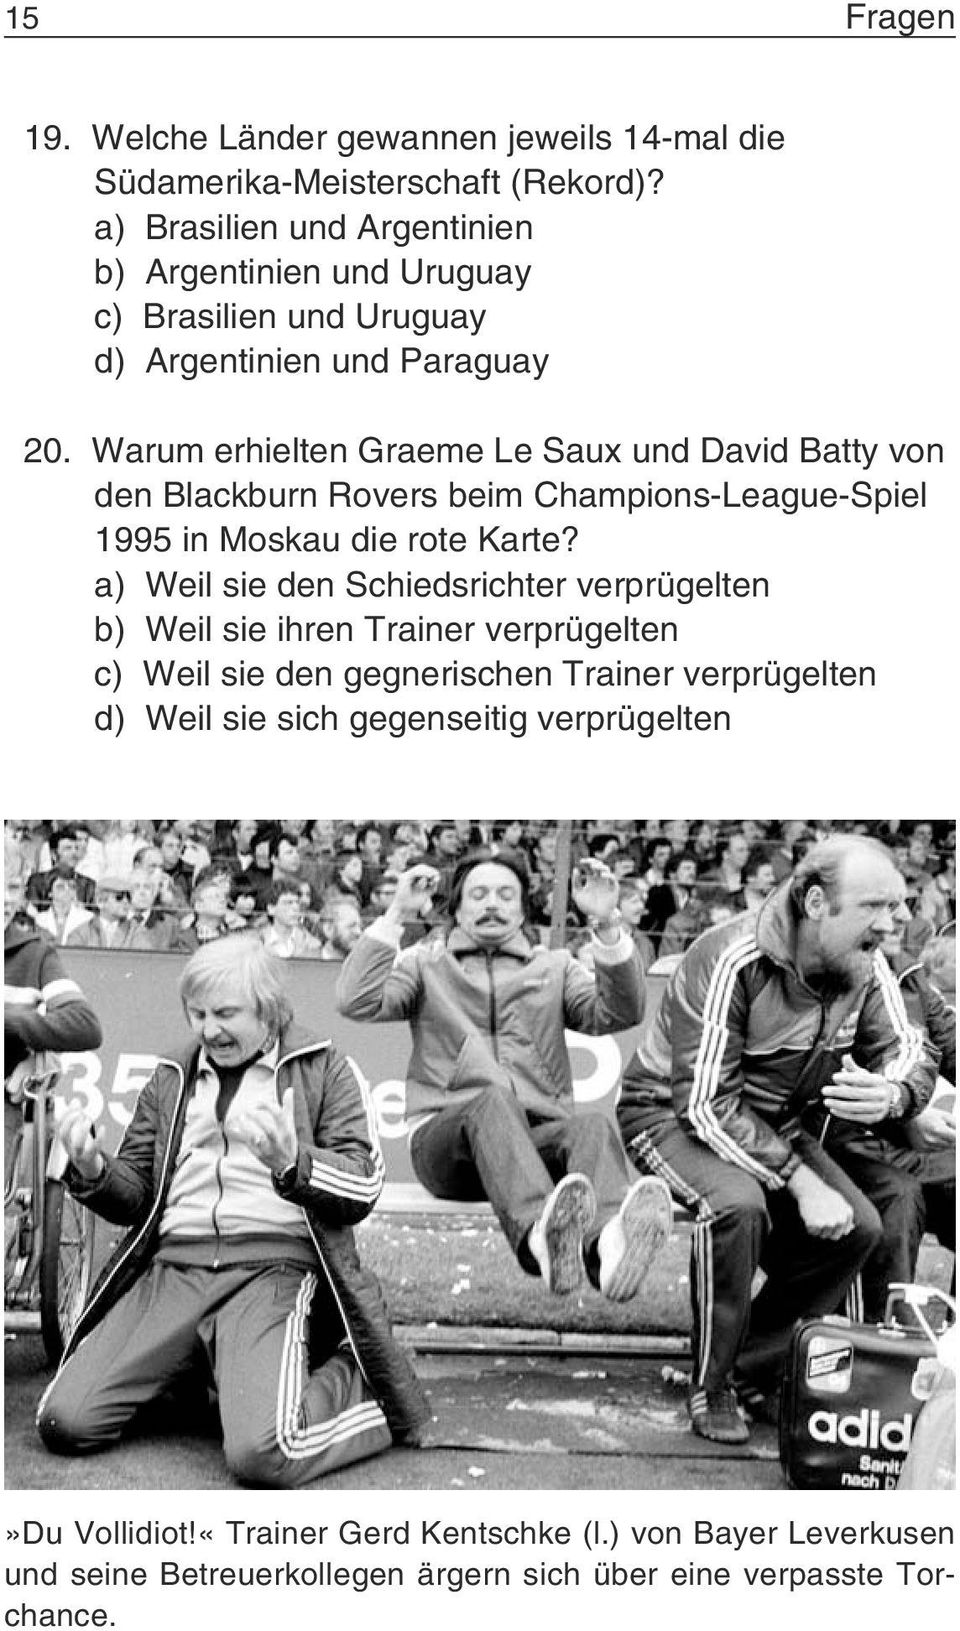 Warum erhielten Graeme Le Saux und David Batty von den Blackburn Rovers beim Champions-League-Spiel 1995 in Moskau die rote Karte?